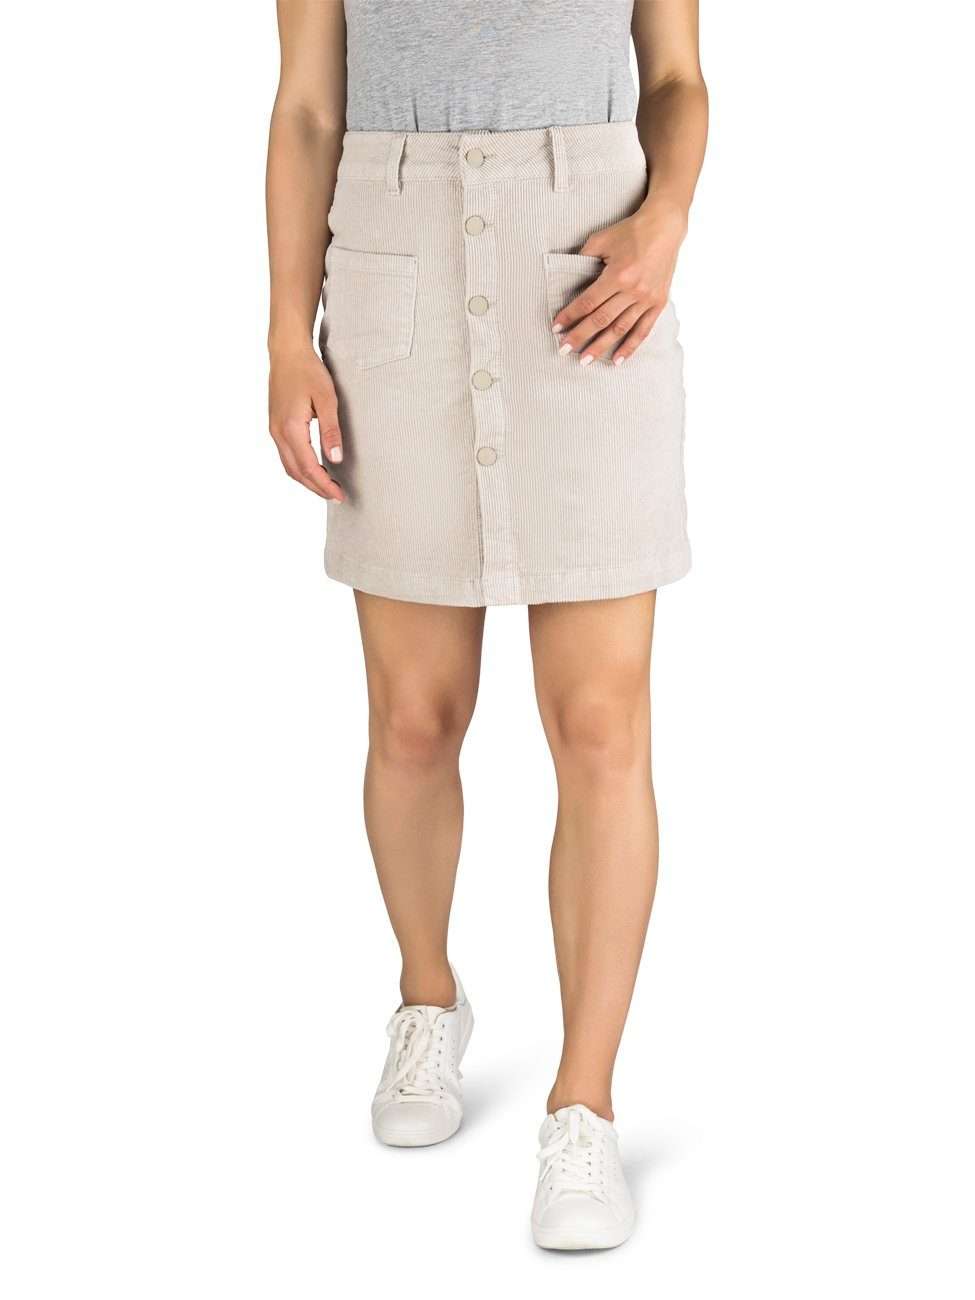 Юбка-трапеция женская мини вельветовая юбка DFAlina короткая юбка-трапеция на стрейче